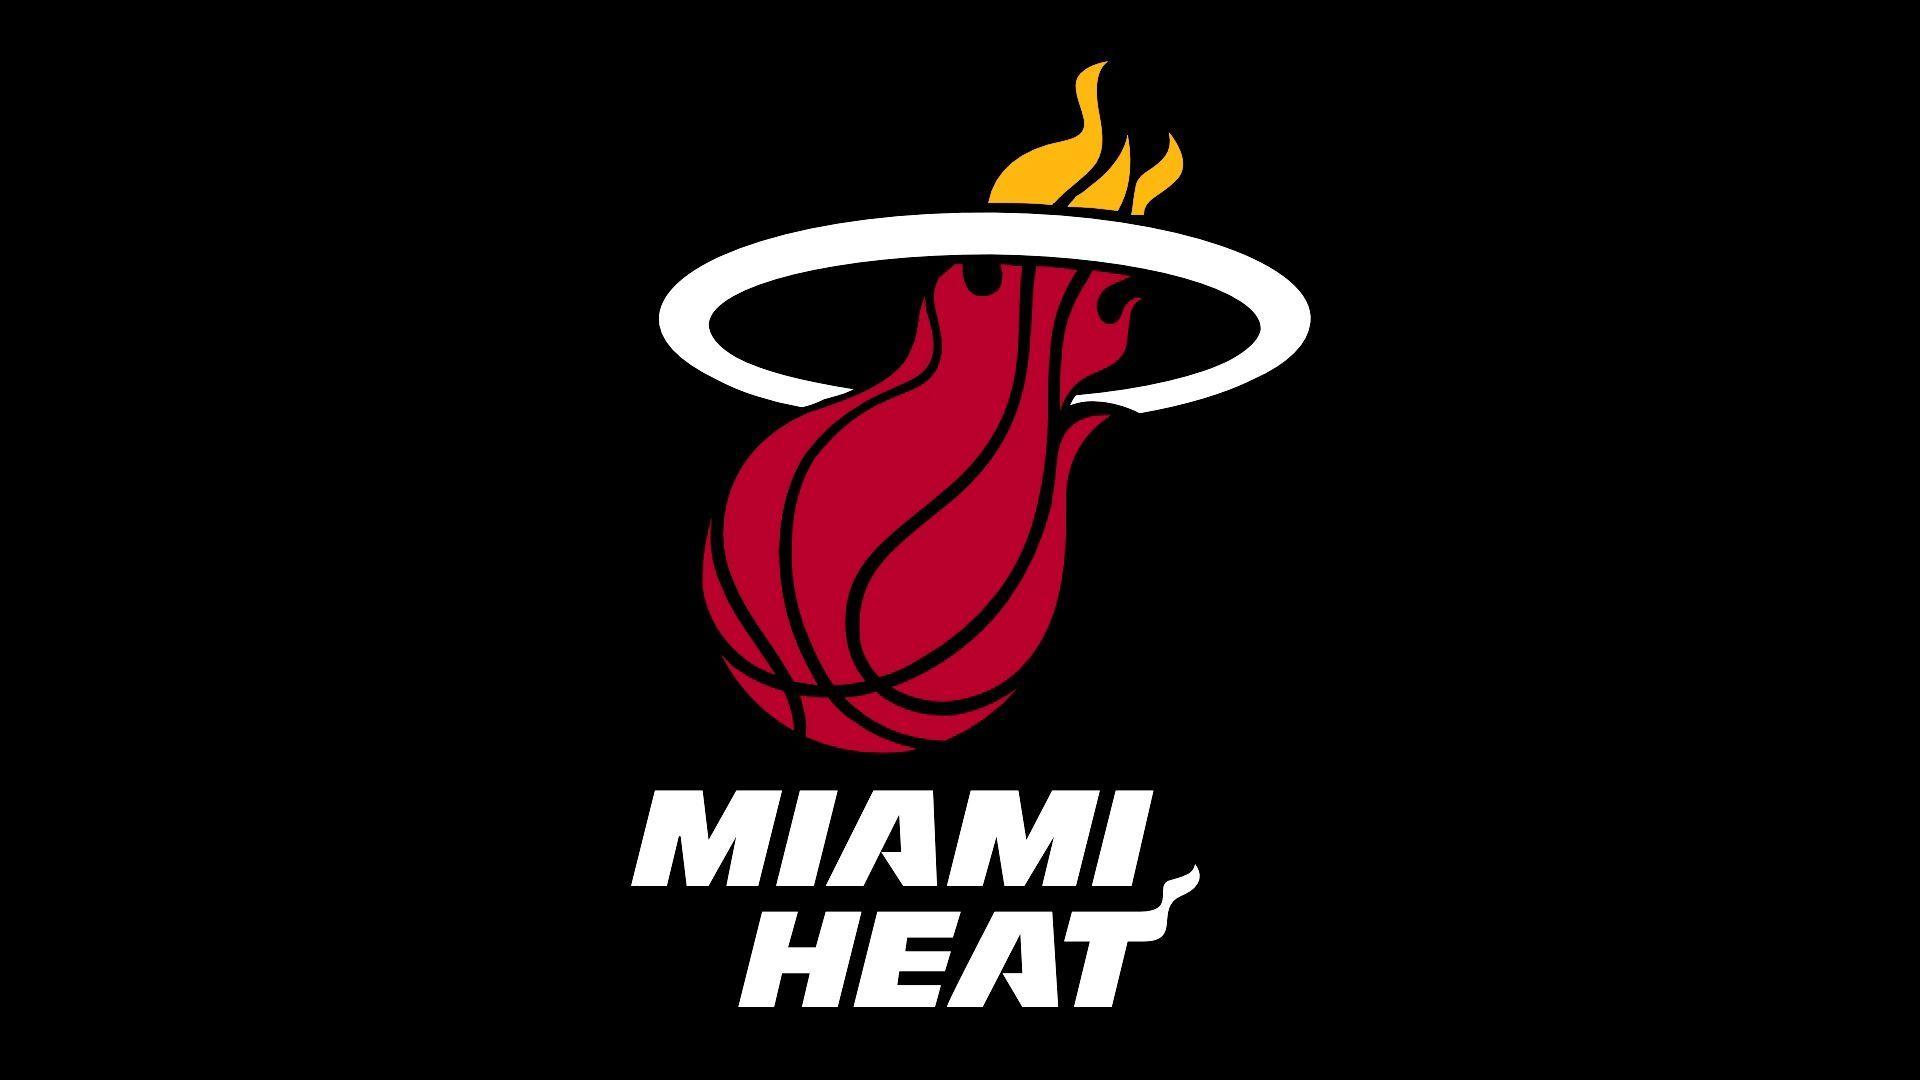 Résultats de recherche d'image pour « basketball team logo